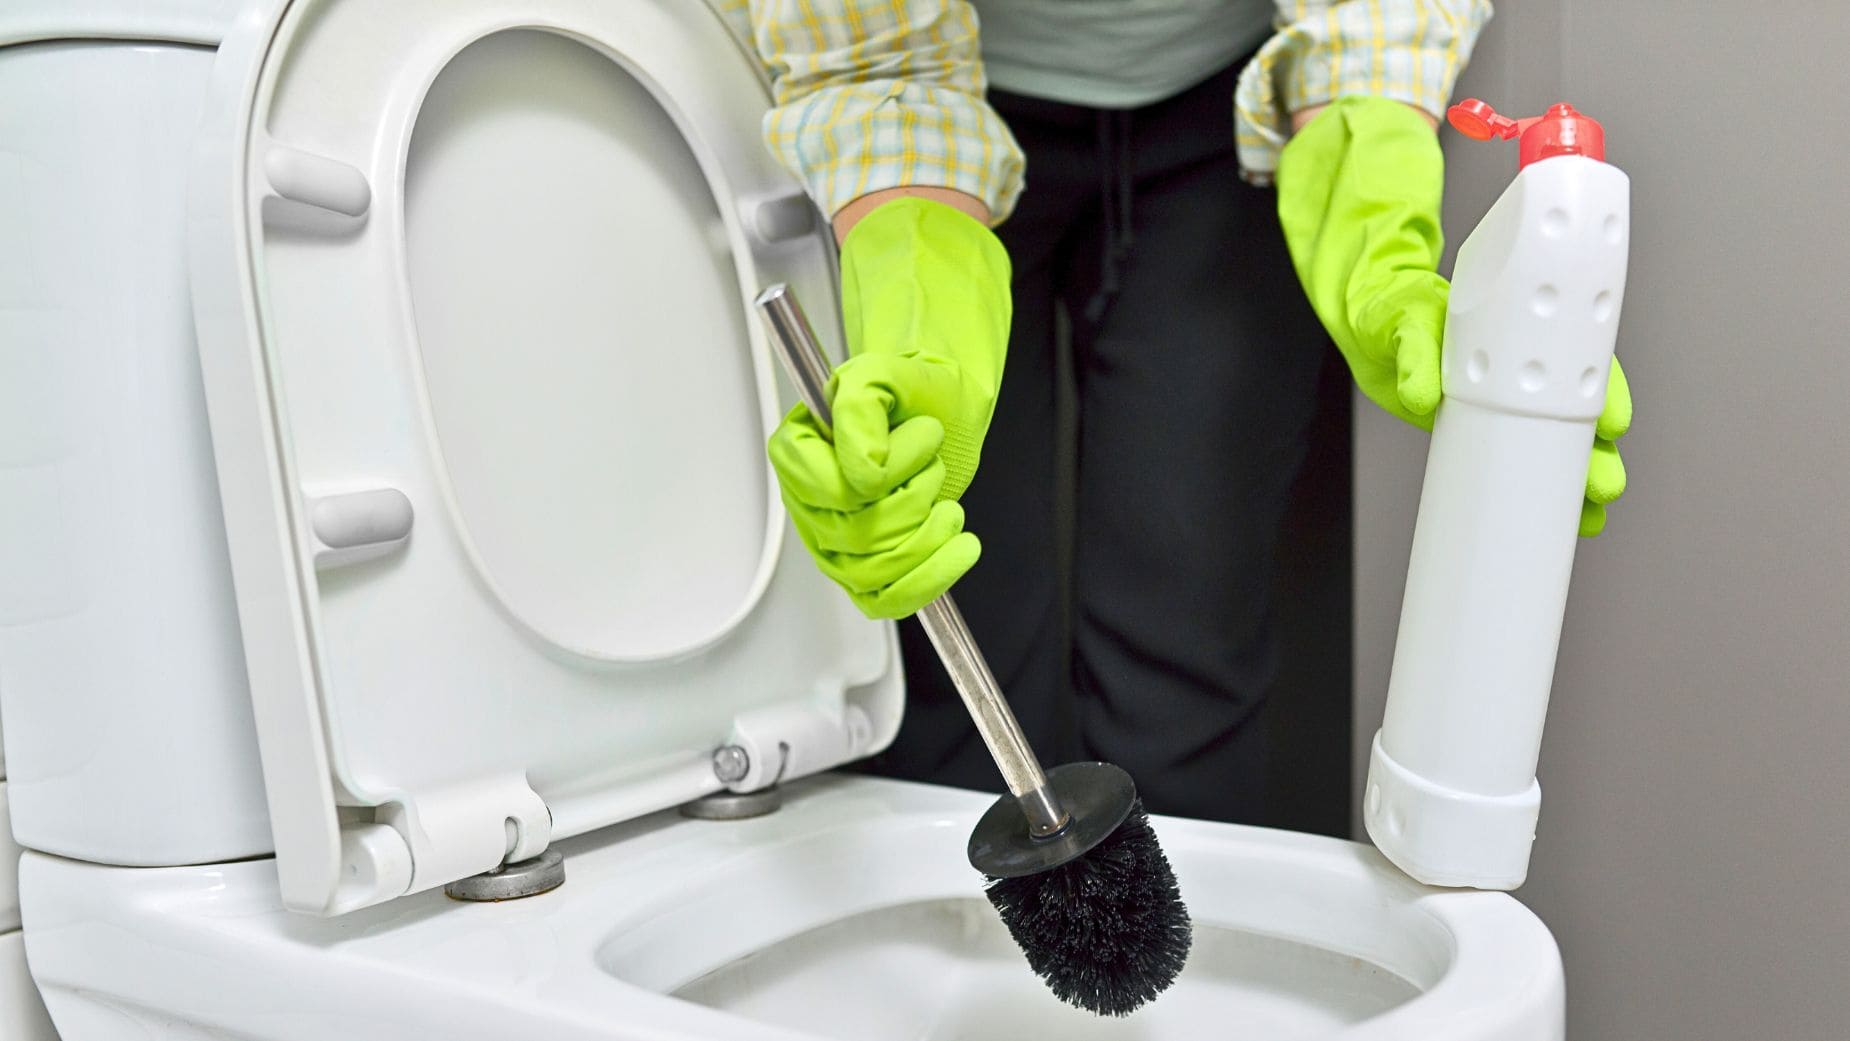 Experta en limpieza destaca truco casero eliminar bacterias baño